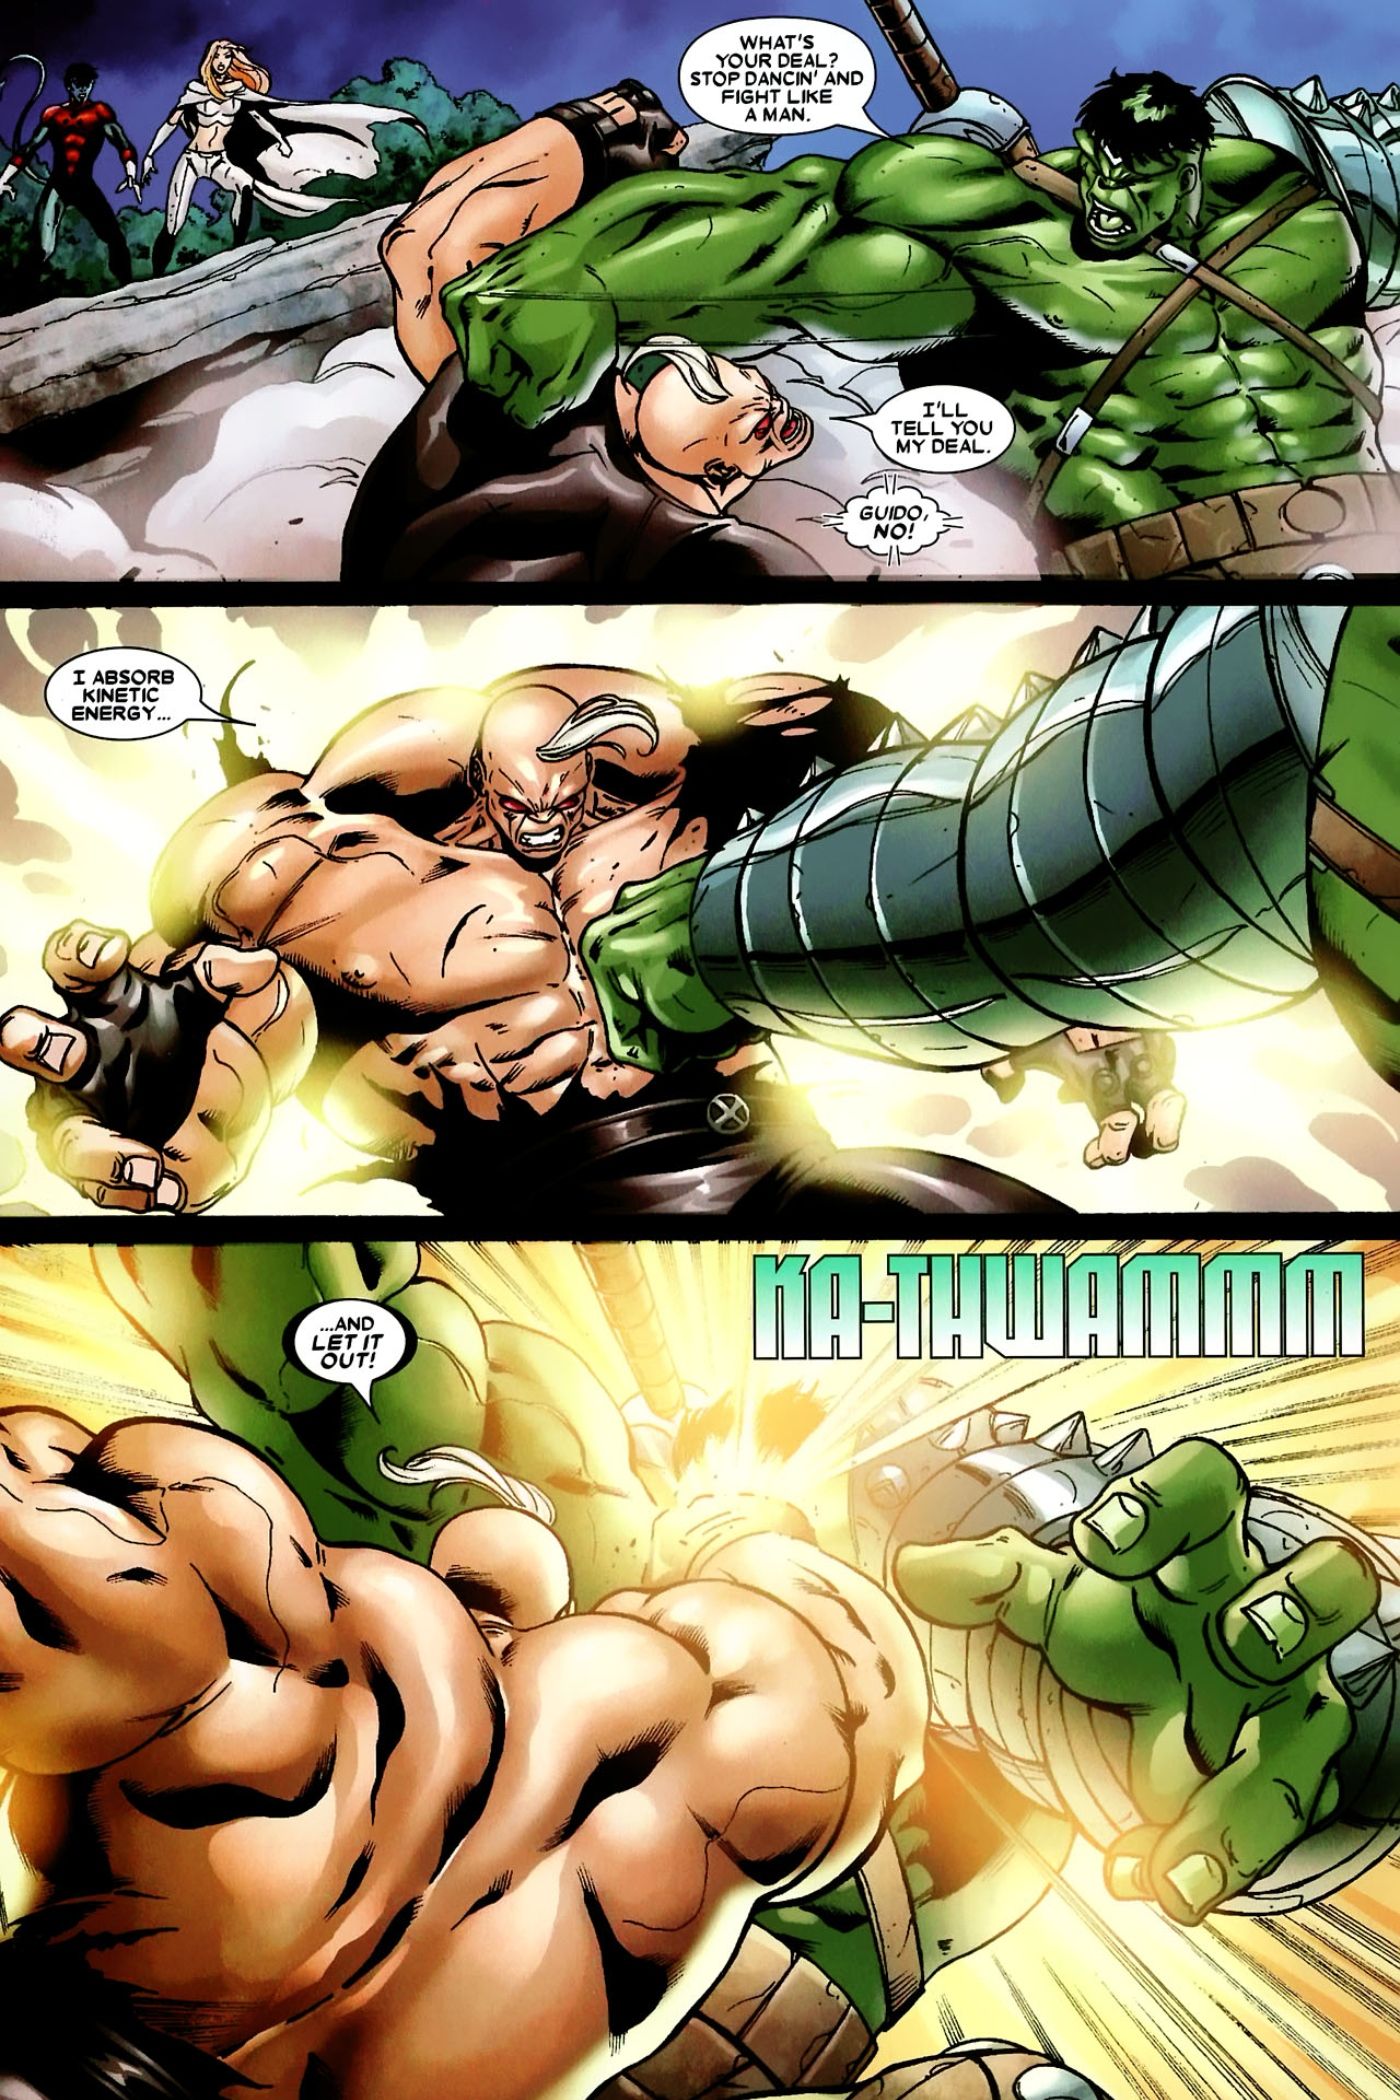 Hulk vs Strong Guy in World War Hulk.